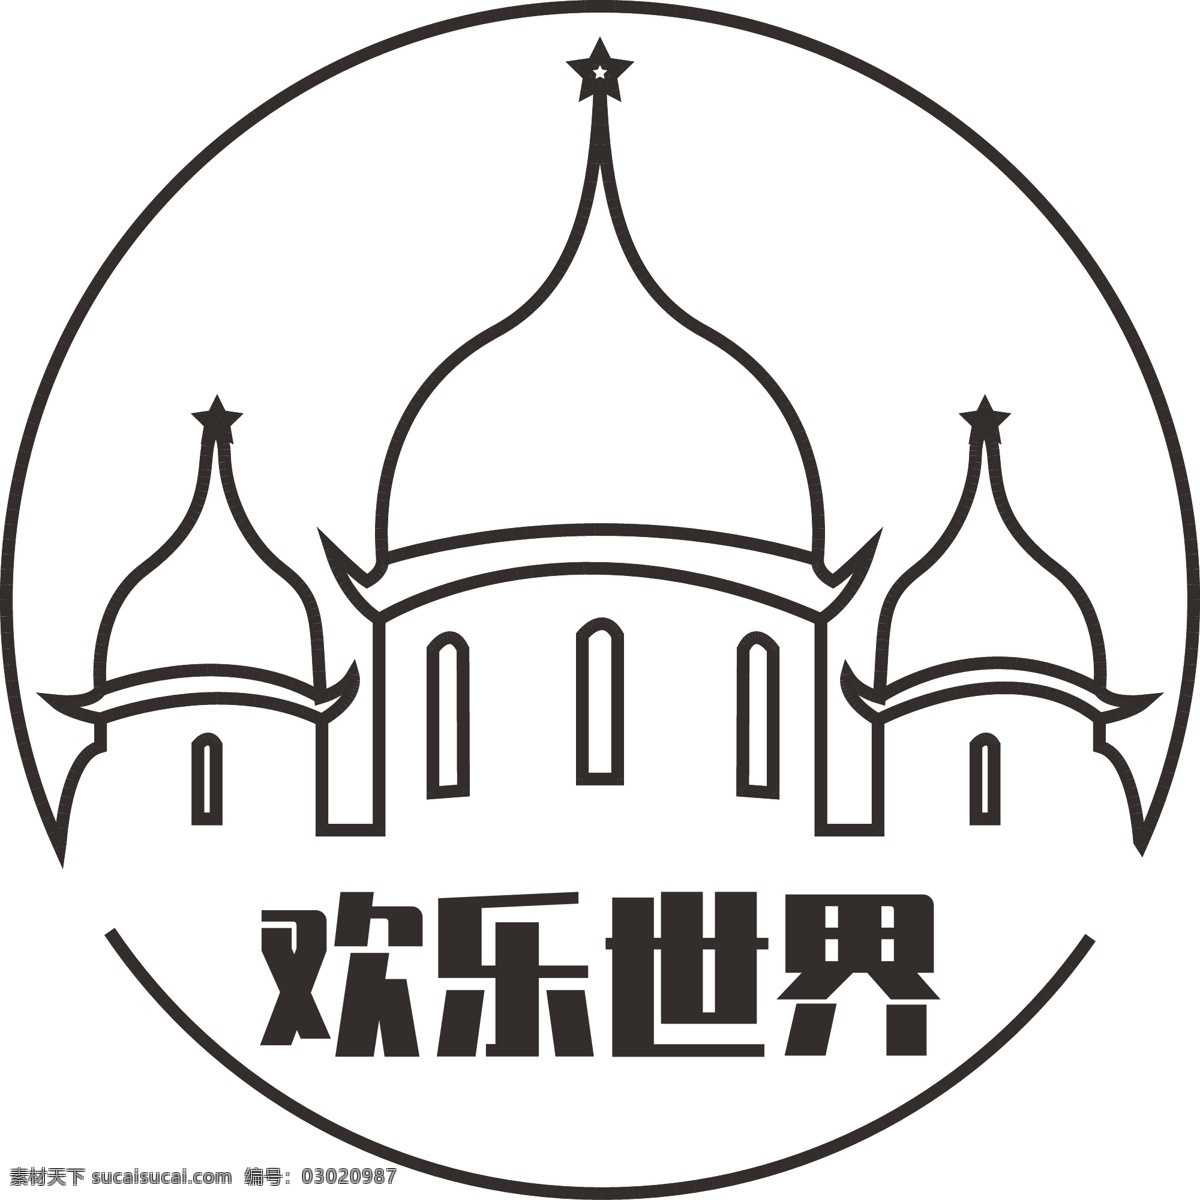 欢乐 世界 logo 城堡 欢乐世界 游乐场